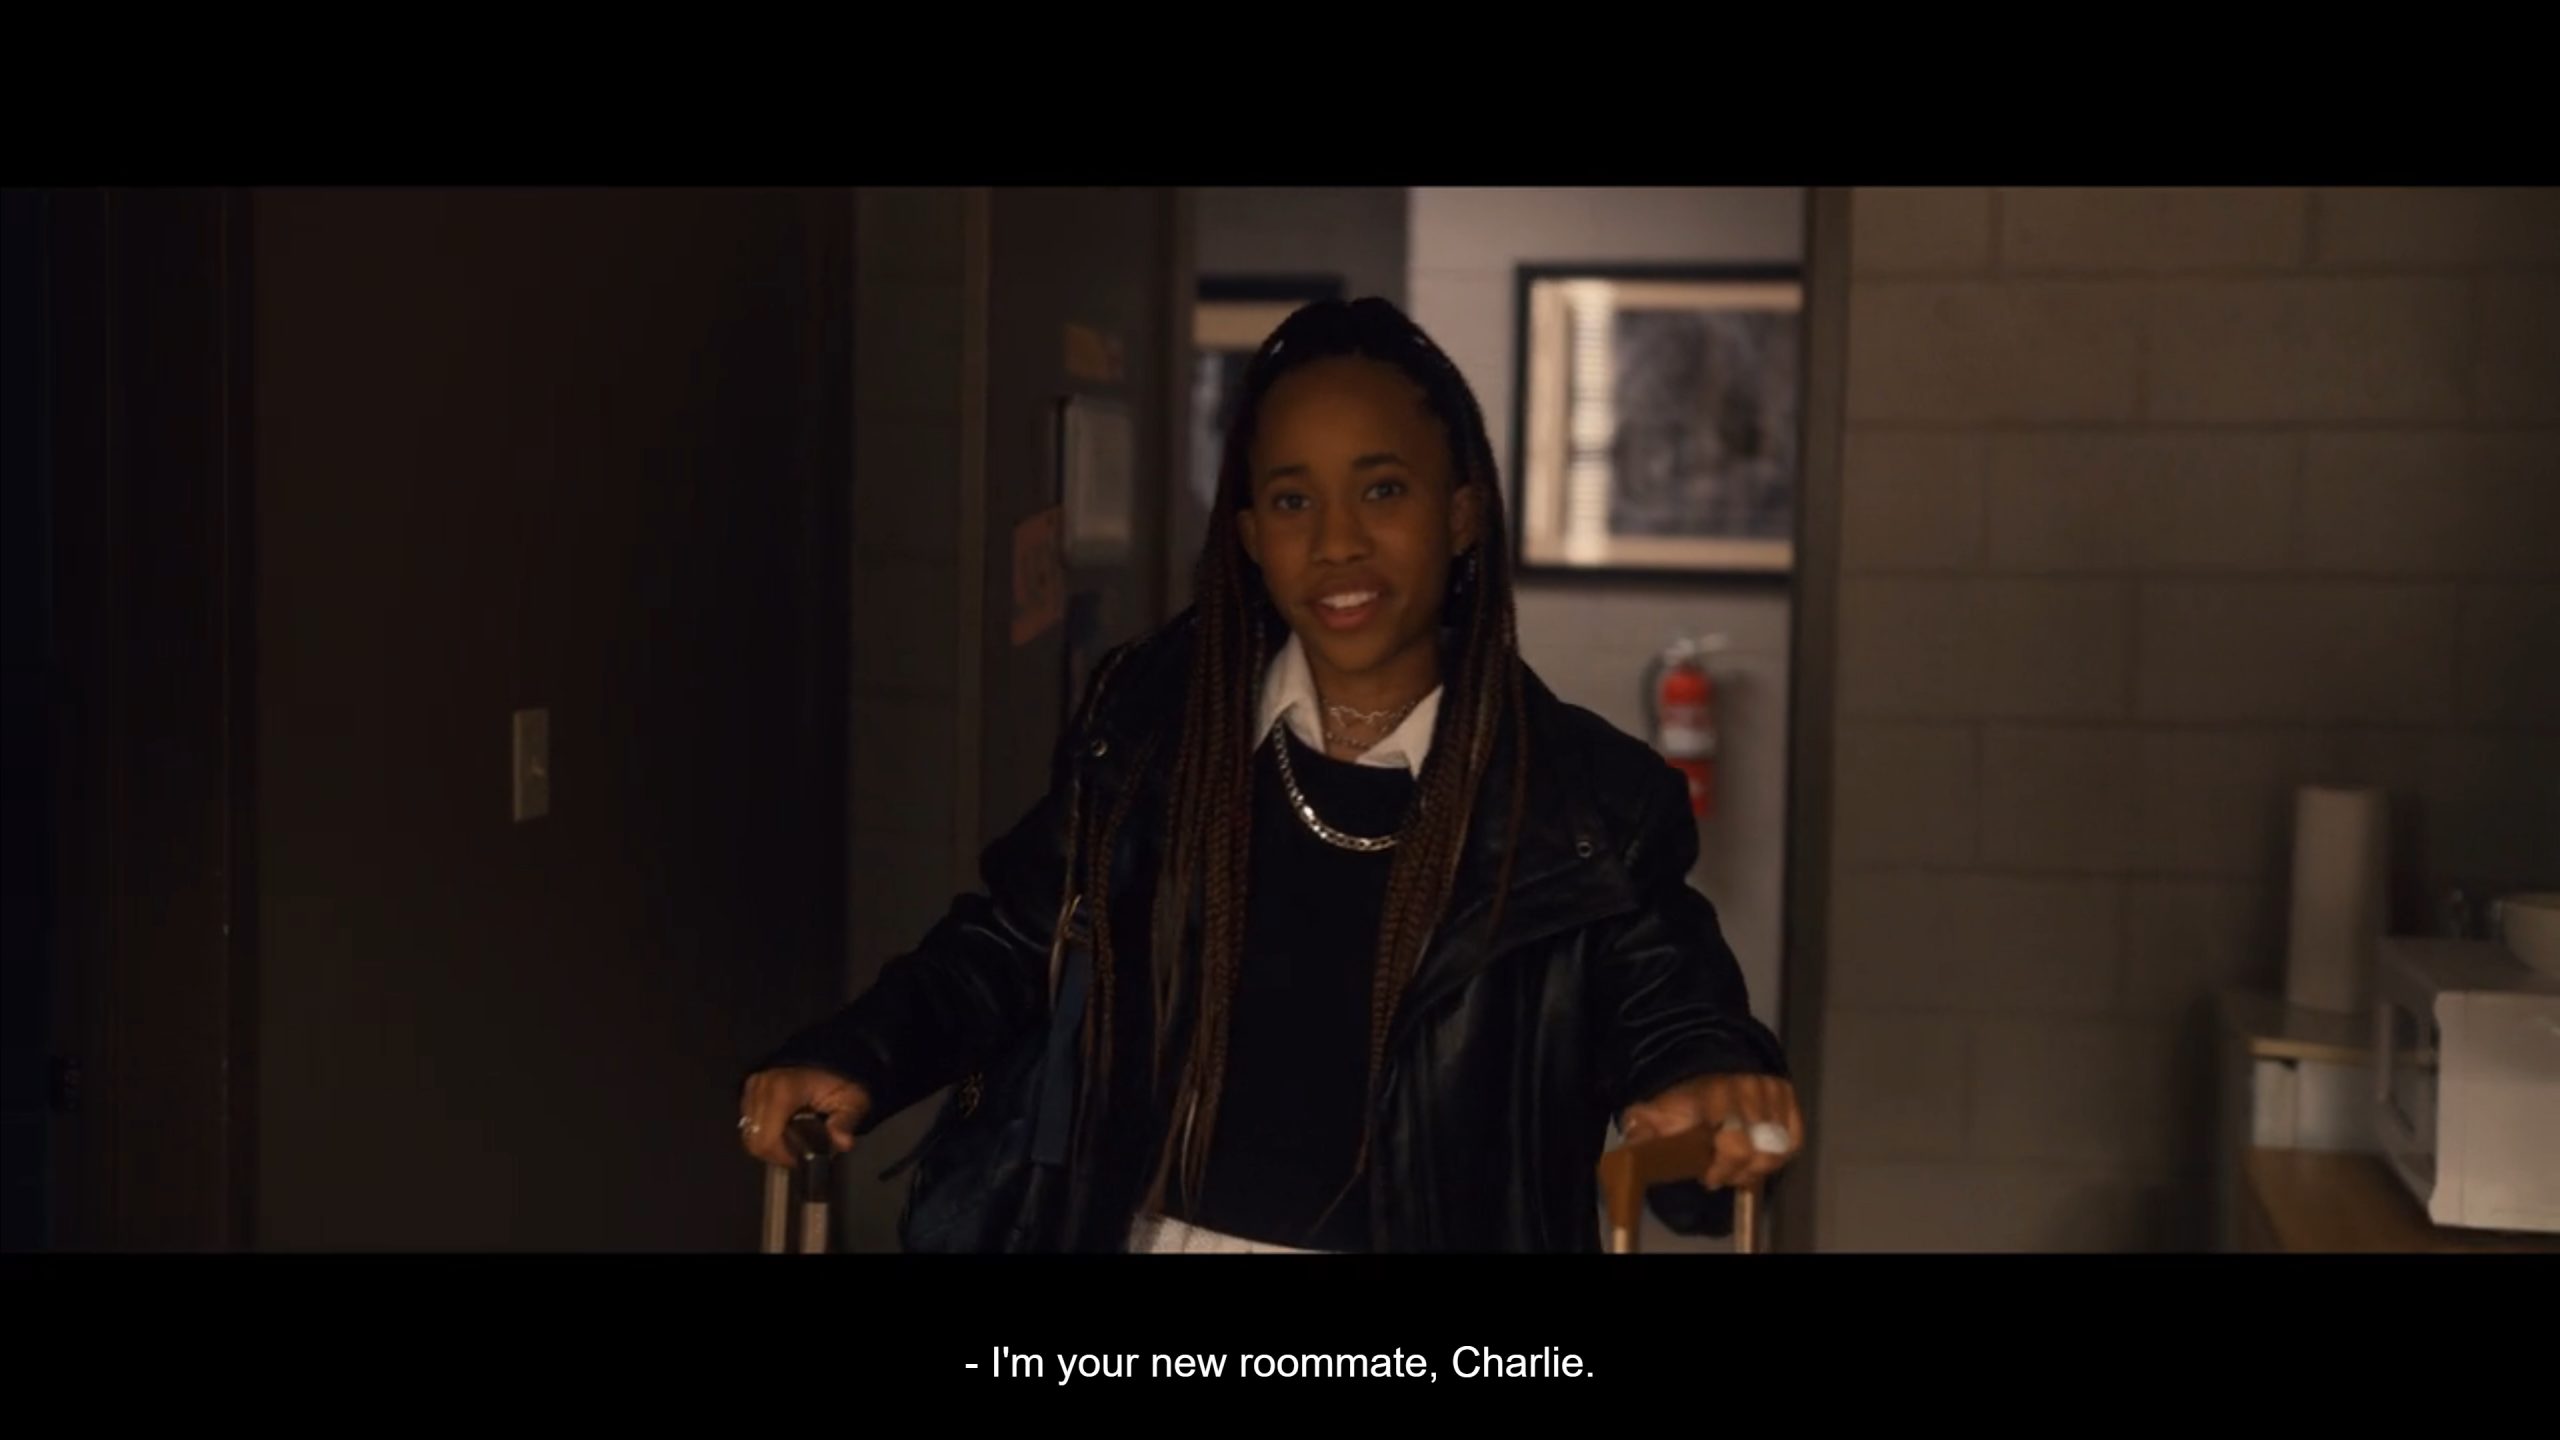 Charlie (Zoe Renee) introducing herself